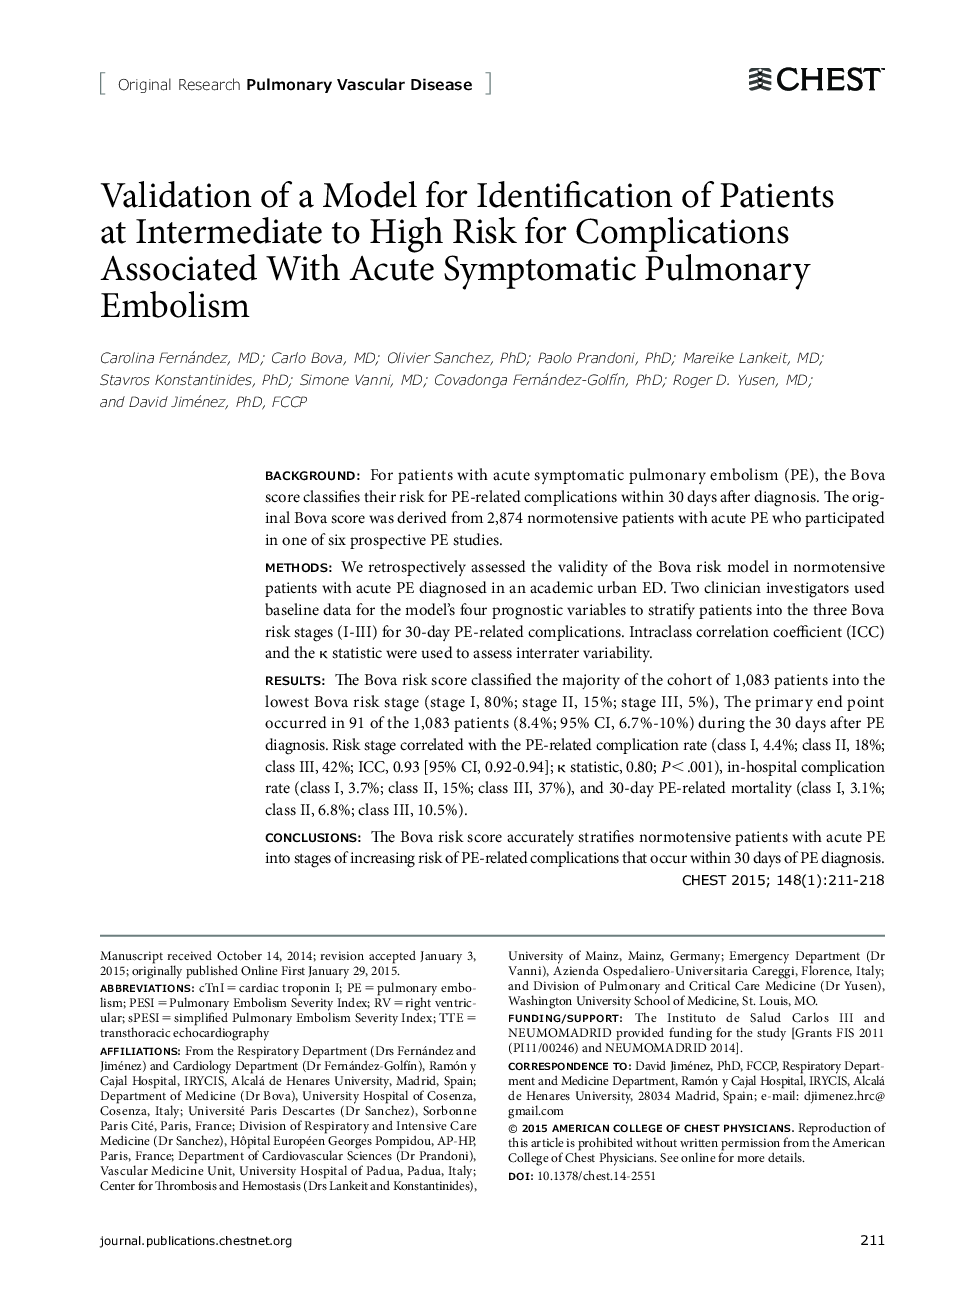 اعتبار سنجی از یک مدل برای شناسایی بیماران در معرض خطر متوسط ​​برای عوارض ناشی از امبولیسم حاد شبه علائم ریوی 